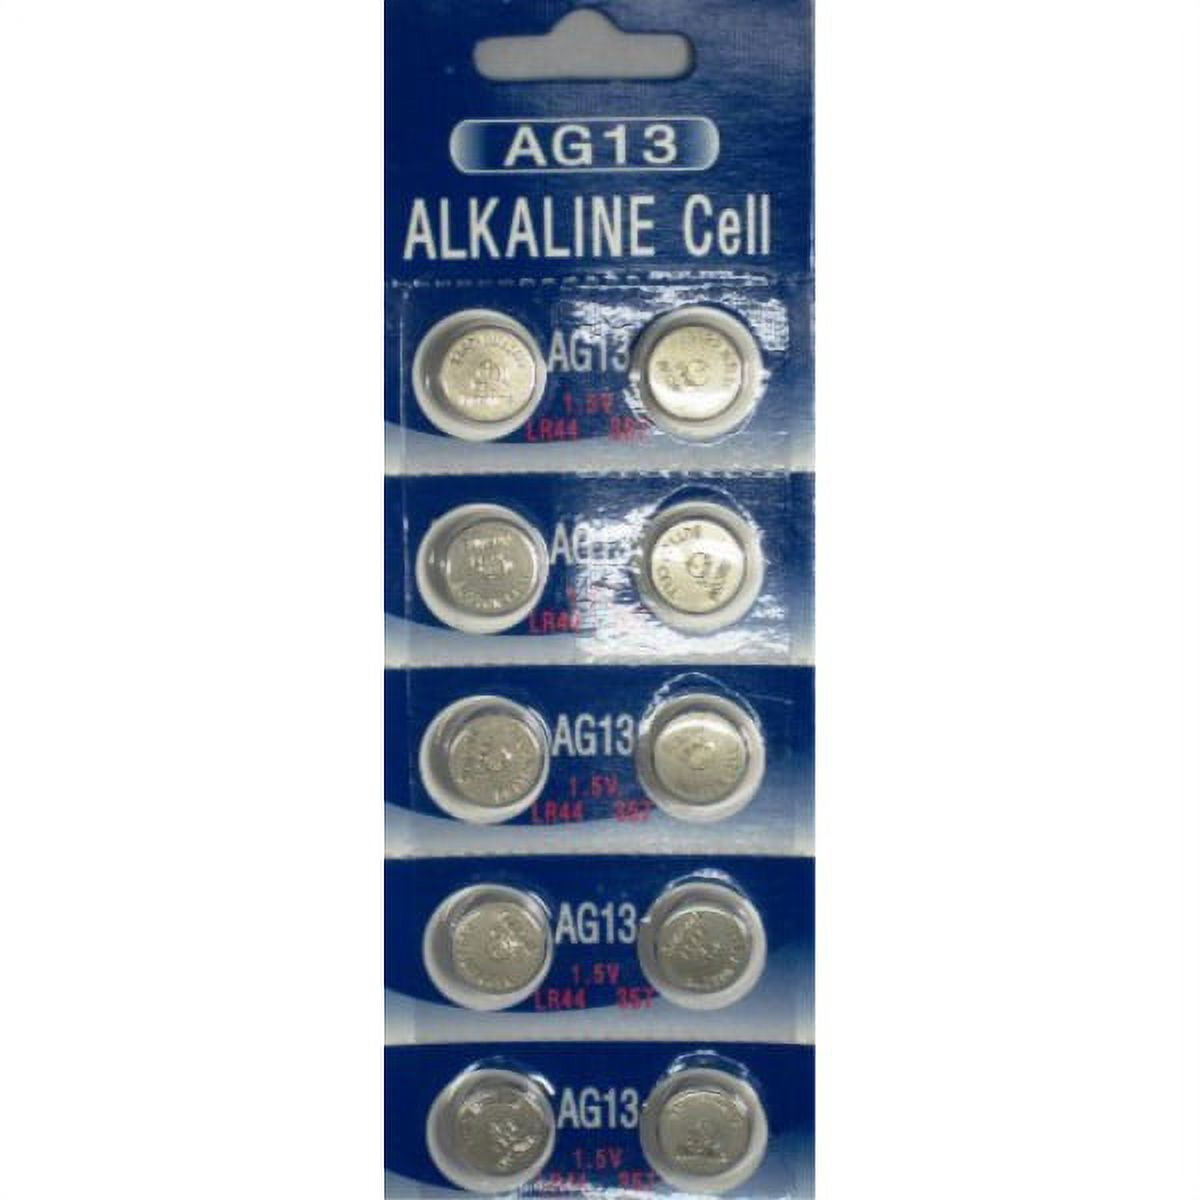 AG13 alkaline battery - Camelion - AG13, AG14, SG13, LR44, SR44, LR1154,  SR1154, 303, 357, 157, V13GA 